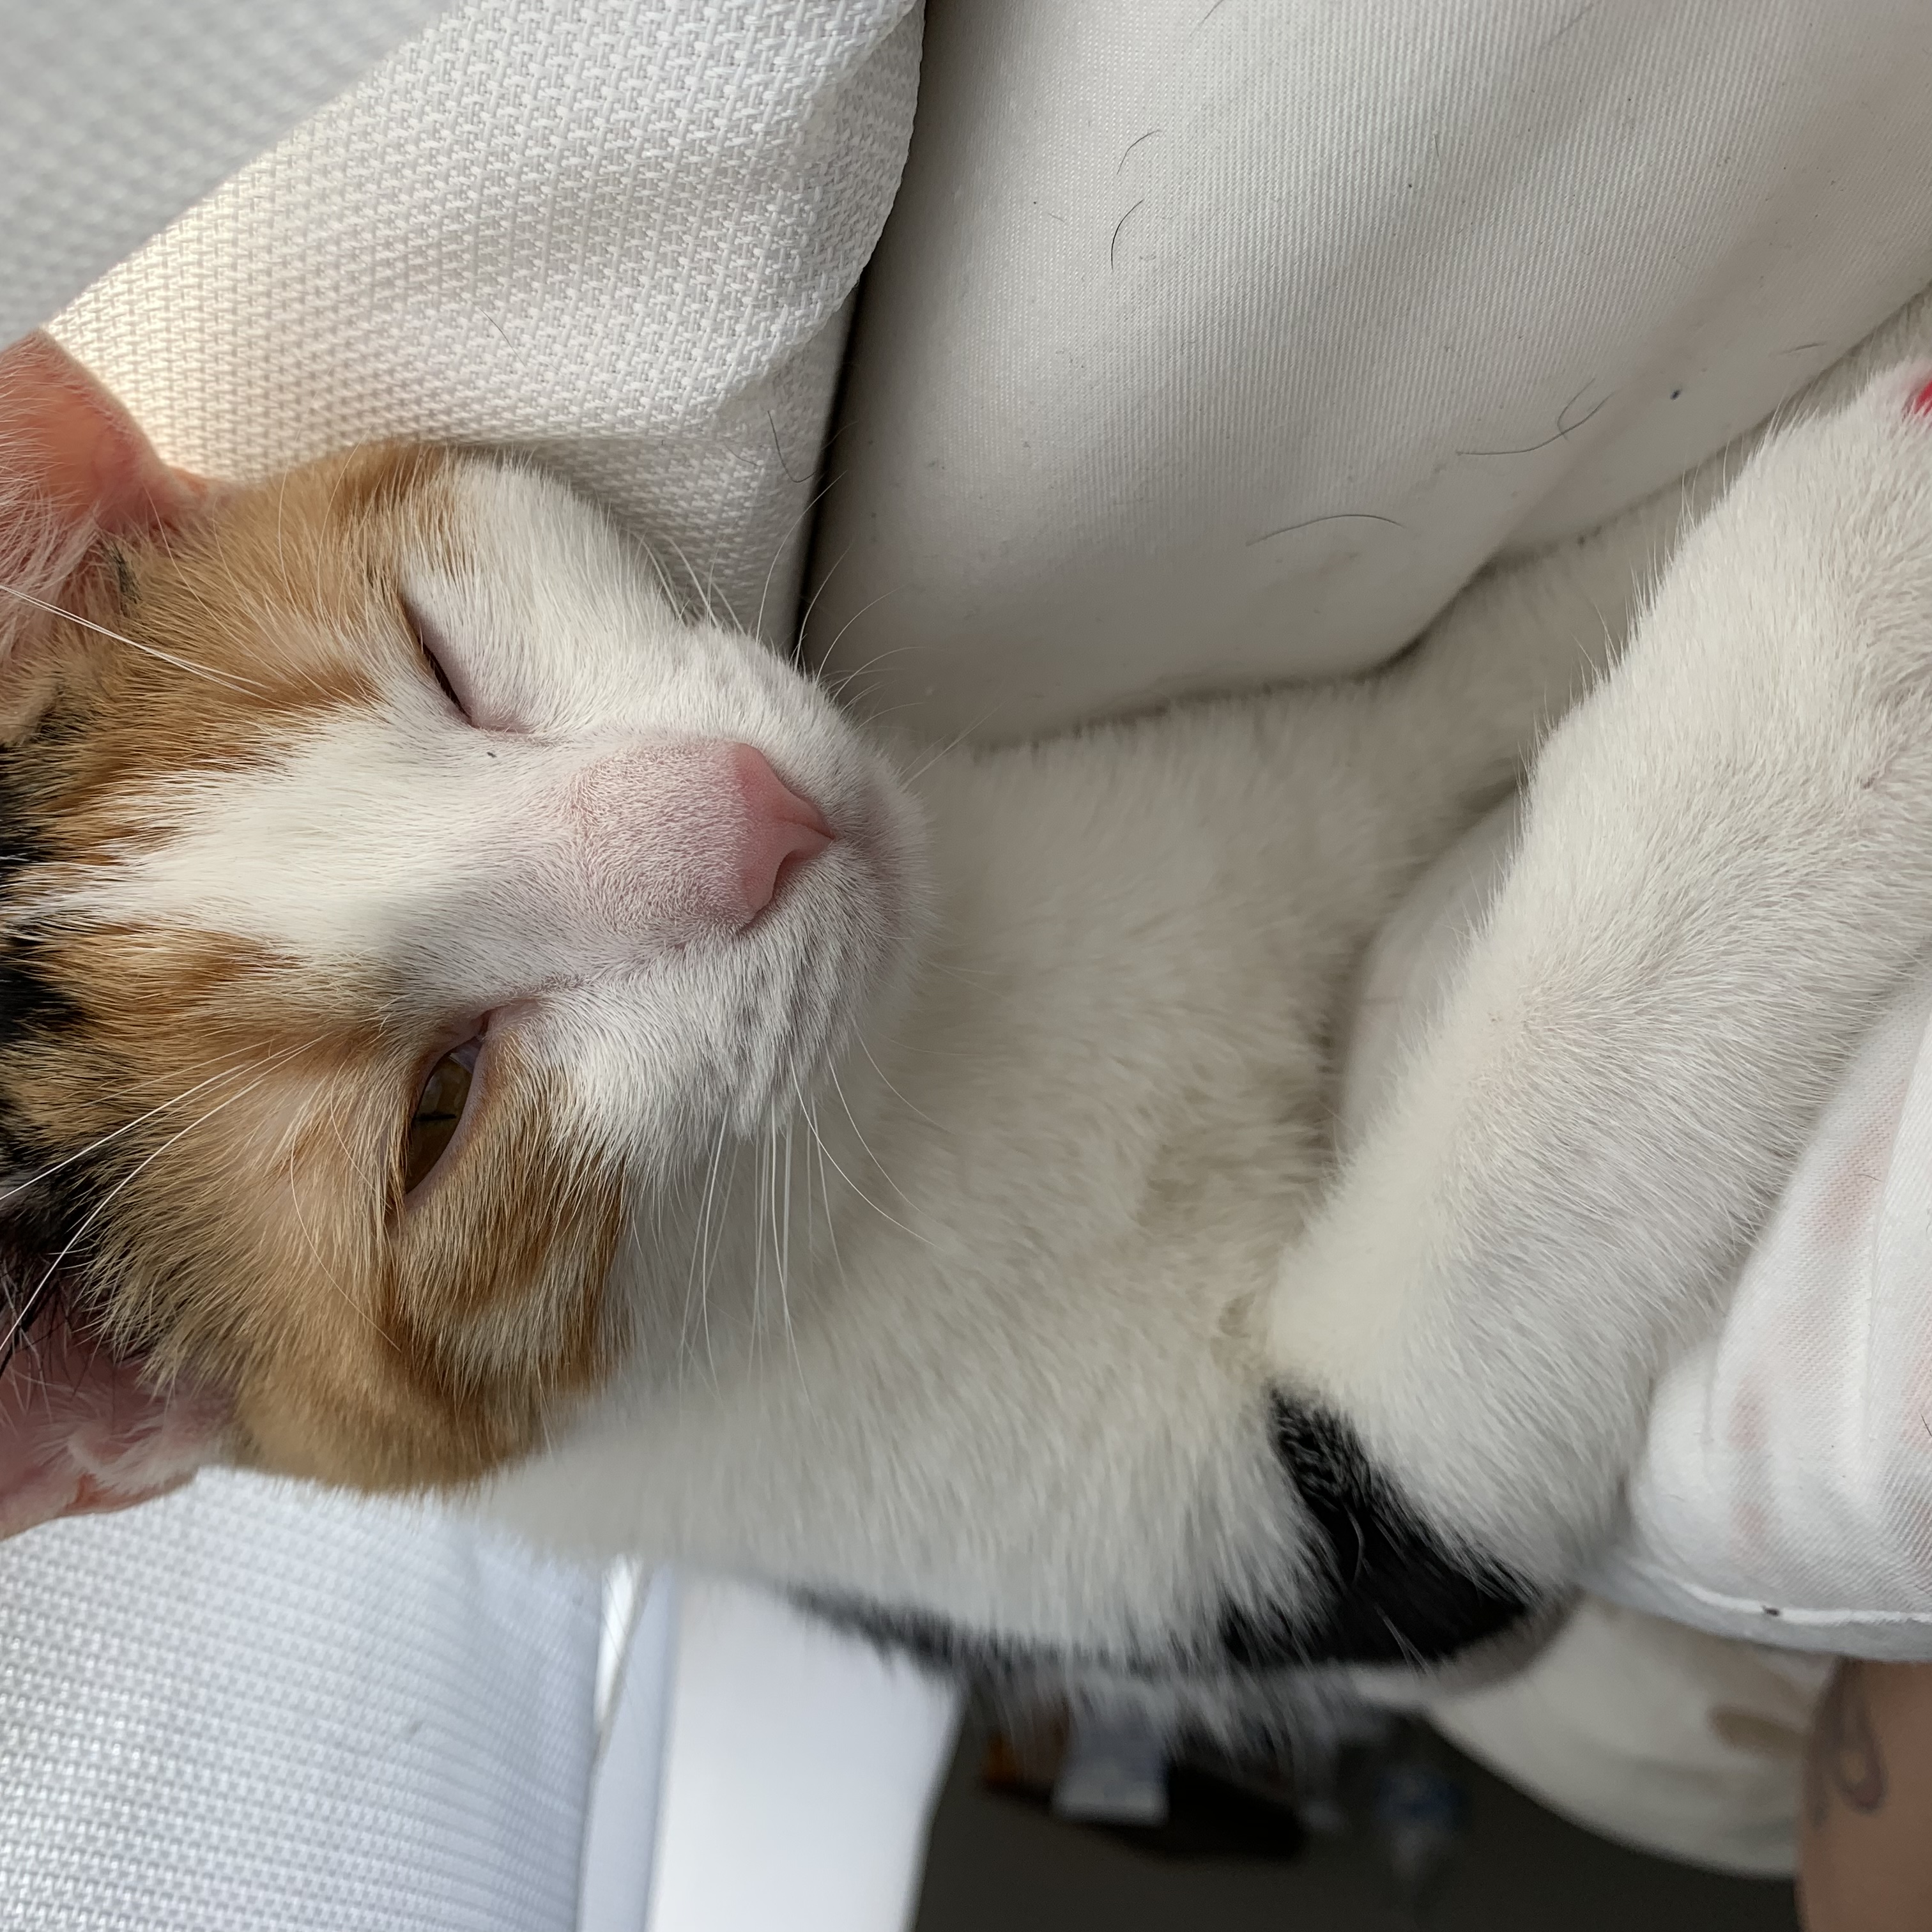 adoptable Cat in El Cajon,CA named Kali